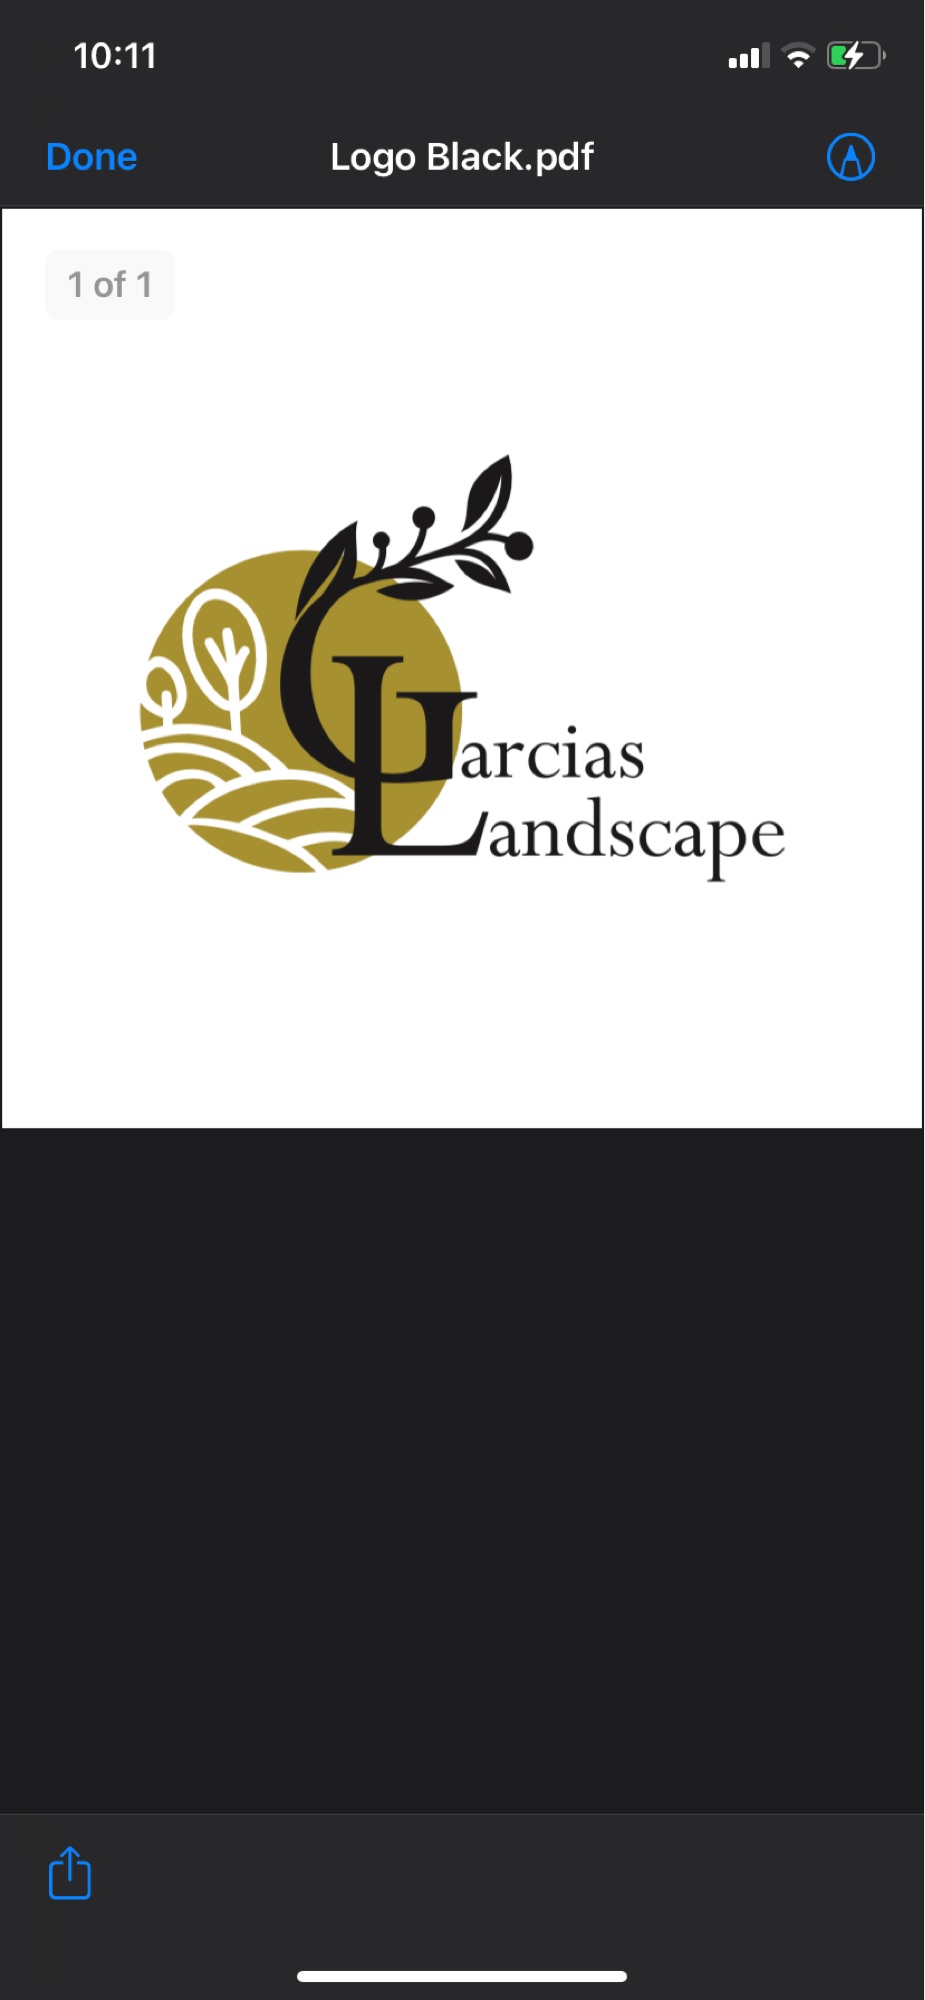 Garcia's Landscape Logo